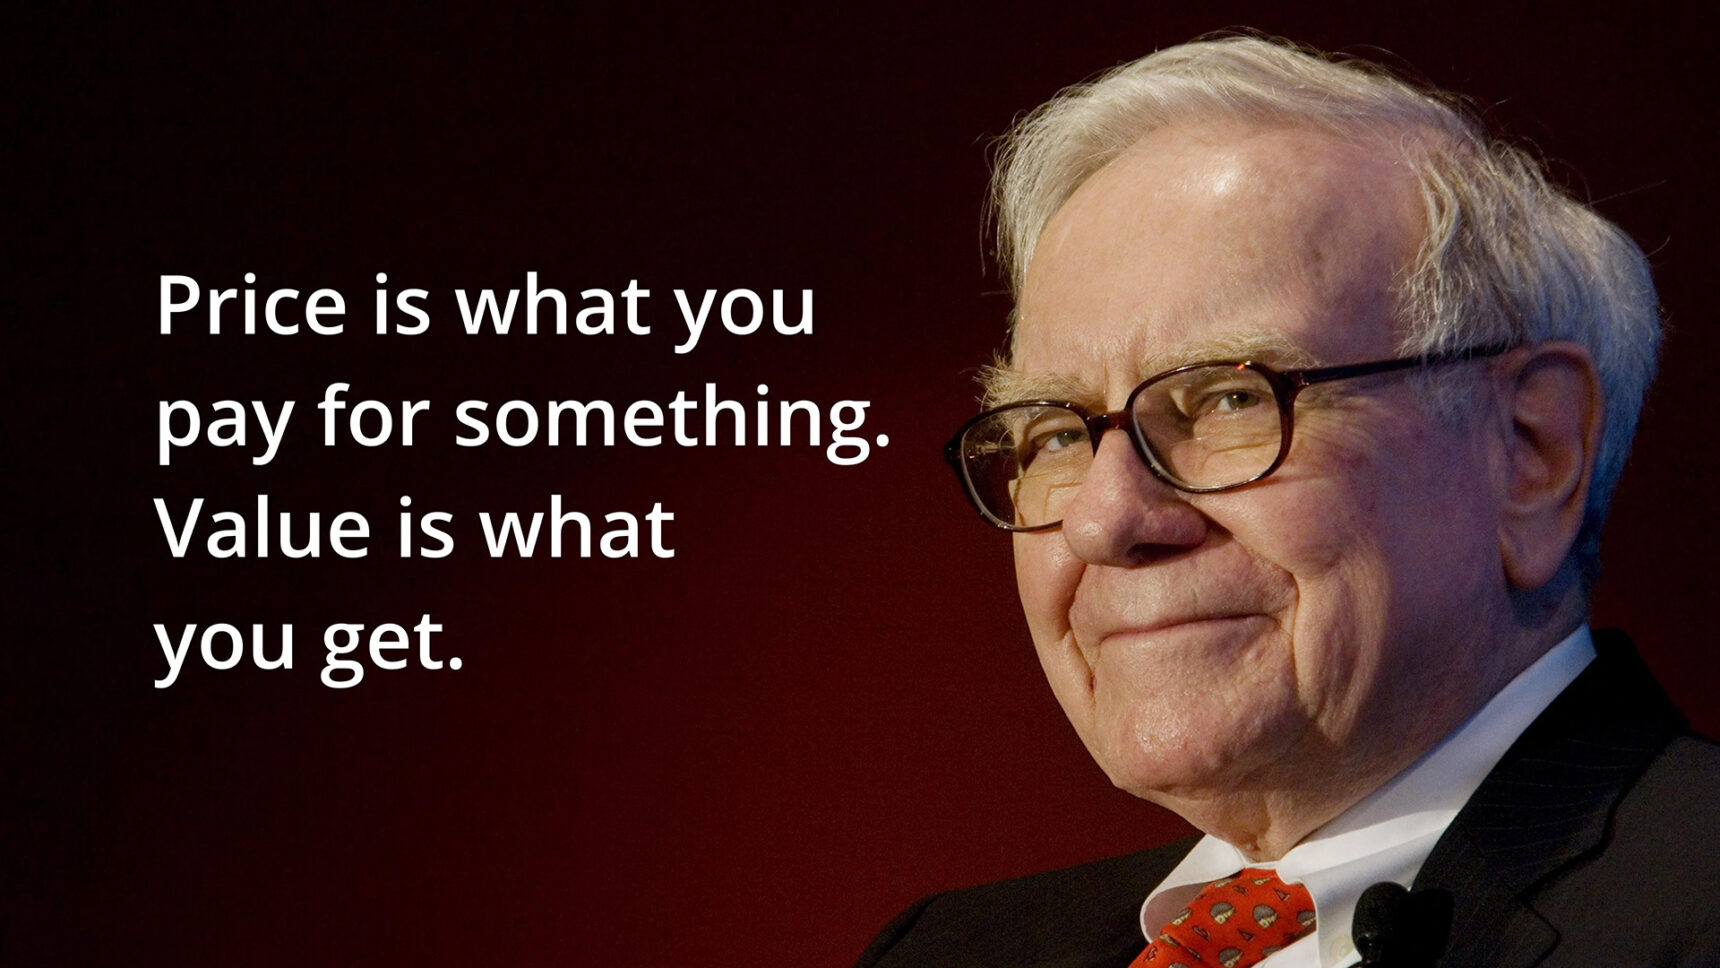 Warren Buffett Value is what you get.